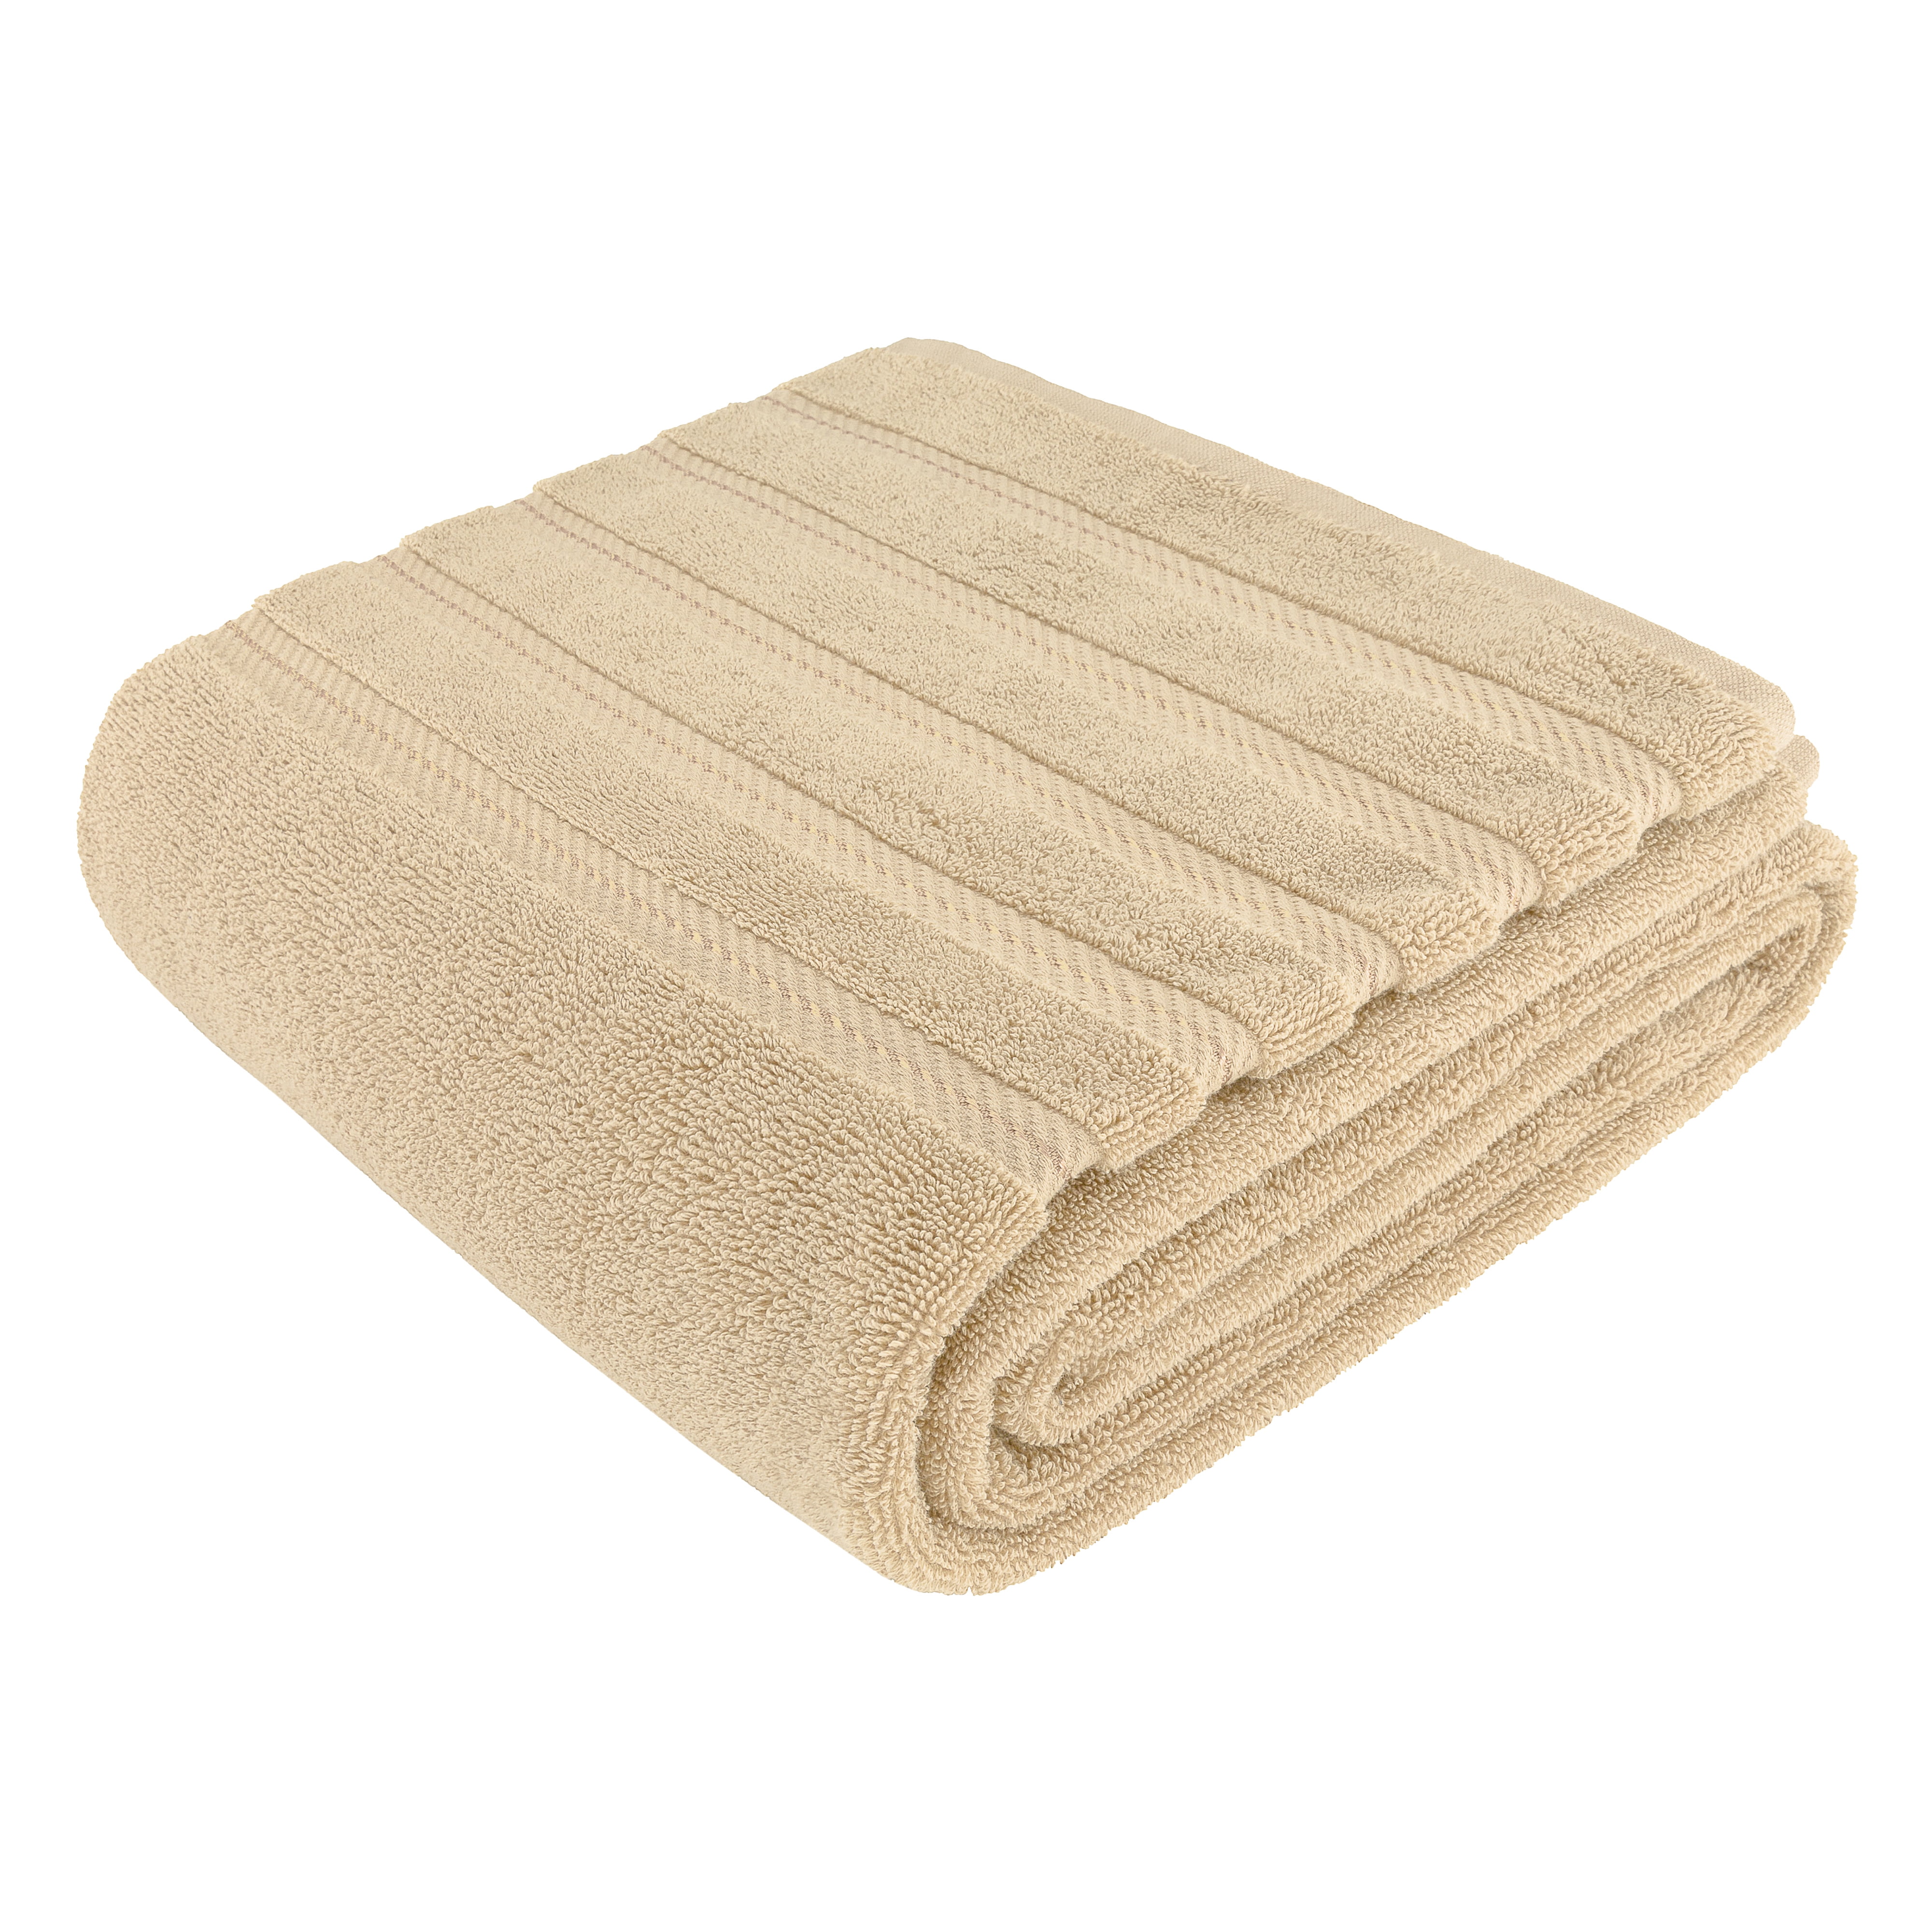 35x70 Inch Bath Sheet JUMBO 100% Turkish Cotton Extremely Soft & Luxury  Extra Large Bath Towel (BEST CHOICE)